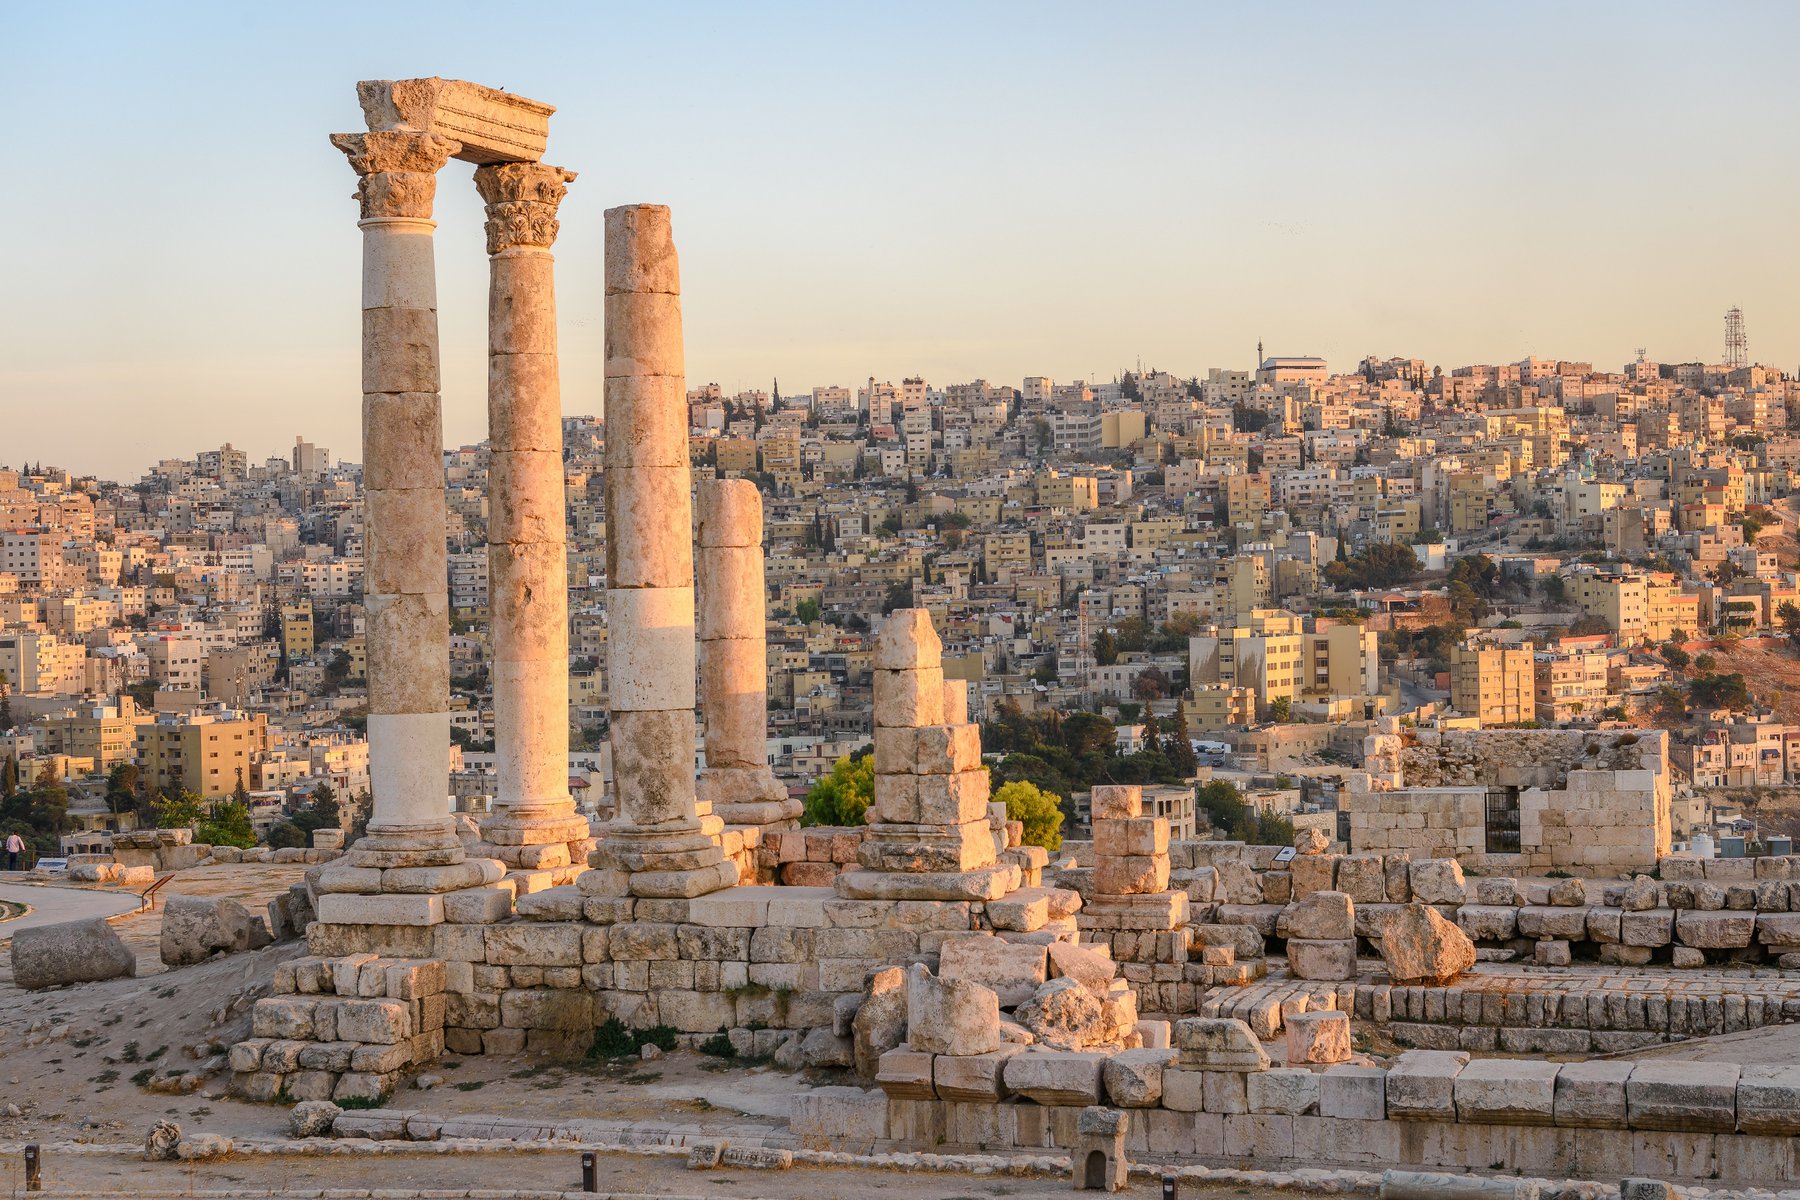 Resan till Jordanien inleds med ett besök i den historiska staden Amman